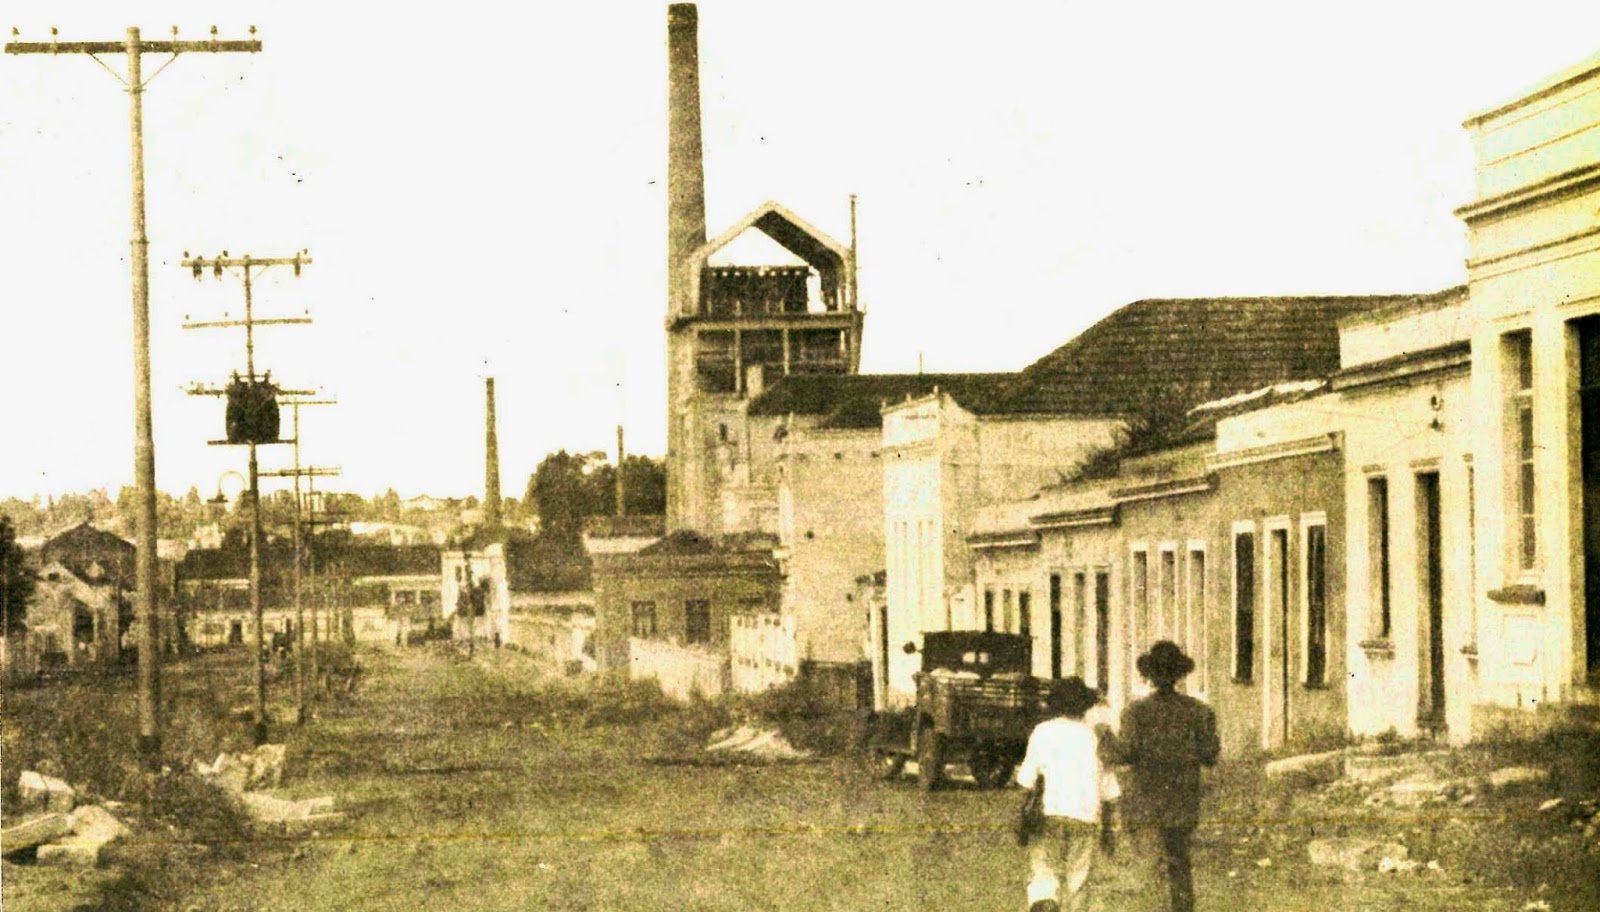 Zoneamento de Curitiba: do arruamento ao bairro industrial (1720-1895)